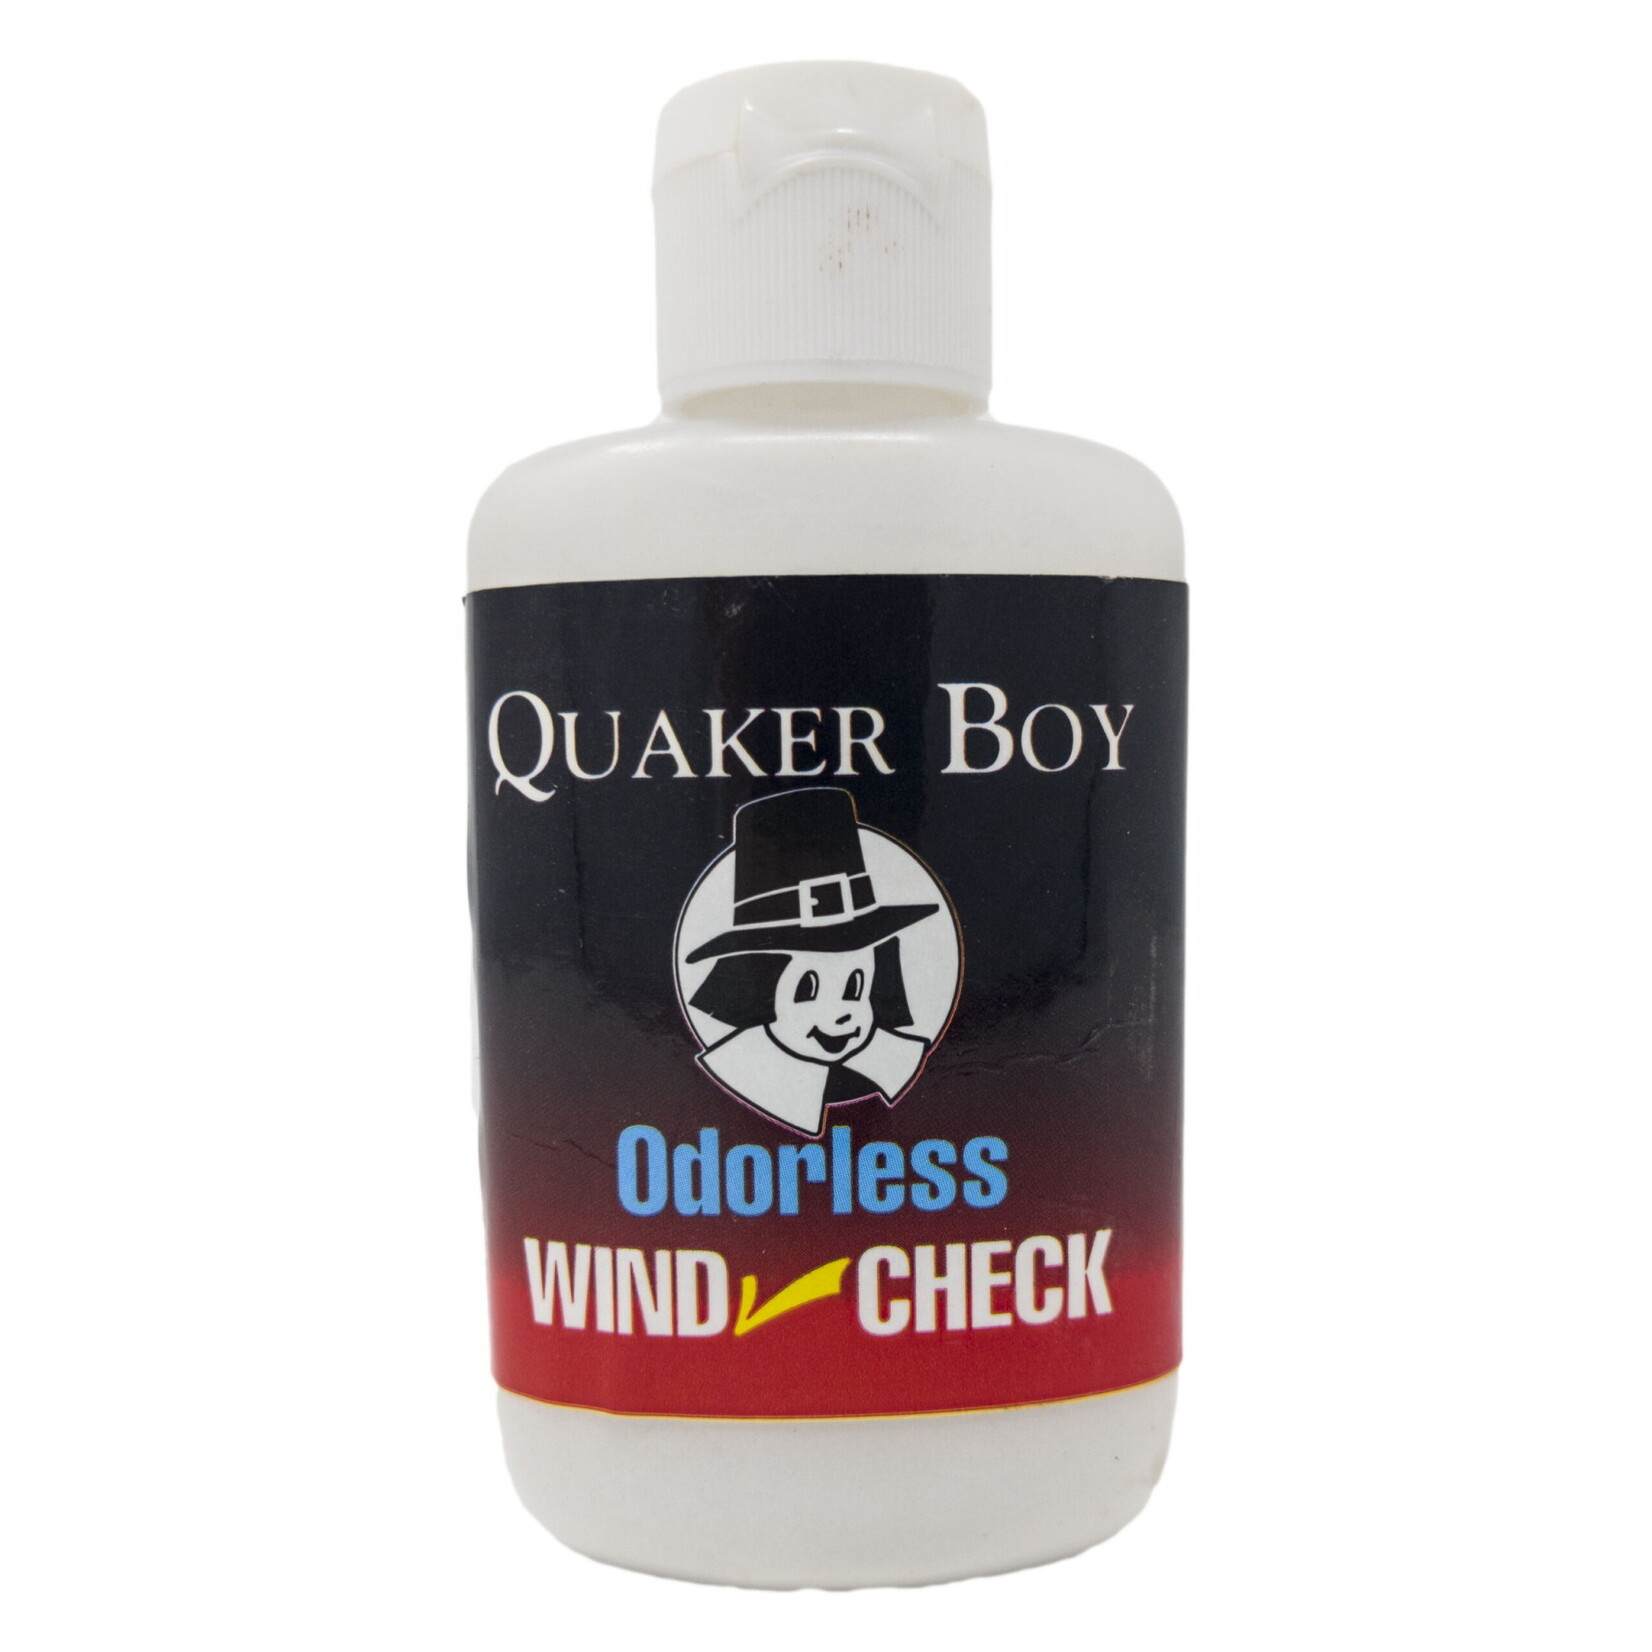 QUAKER BOY Vérificateur De Vent Quaker Boy Wind Check